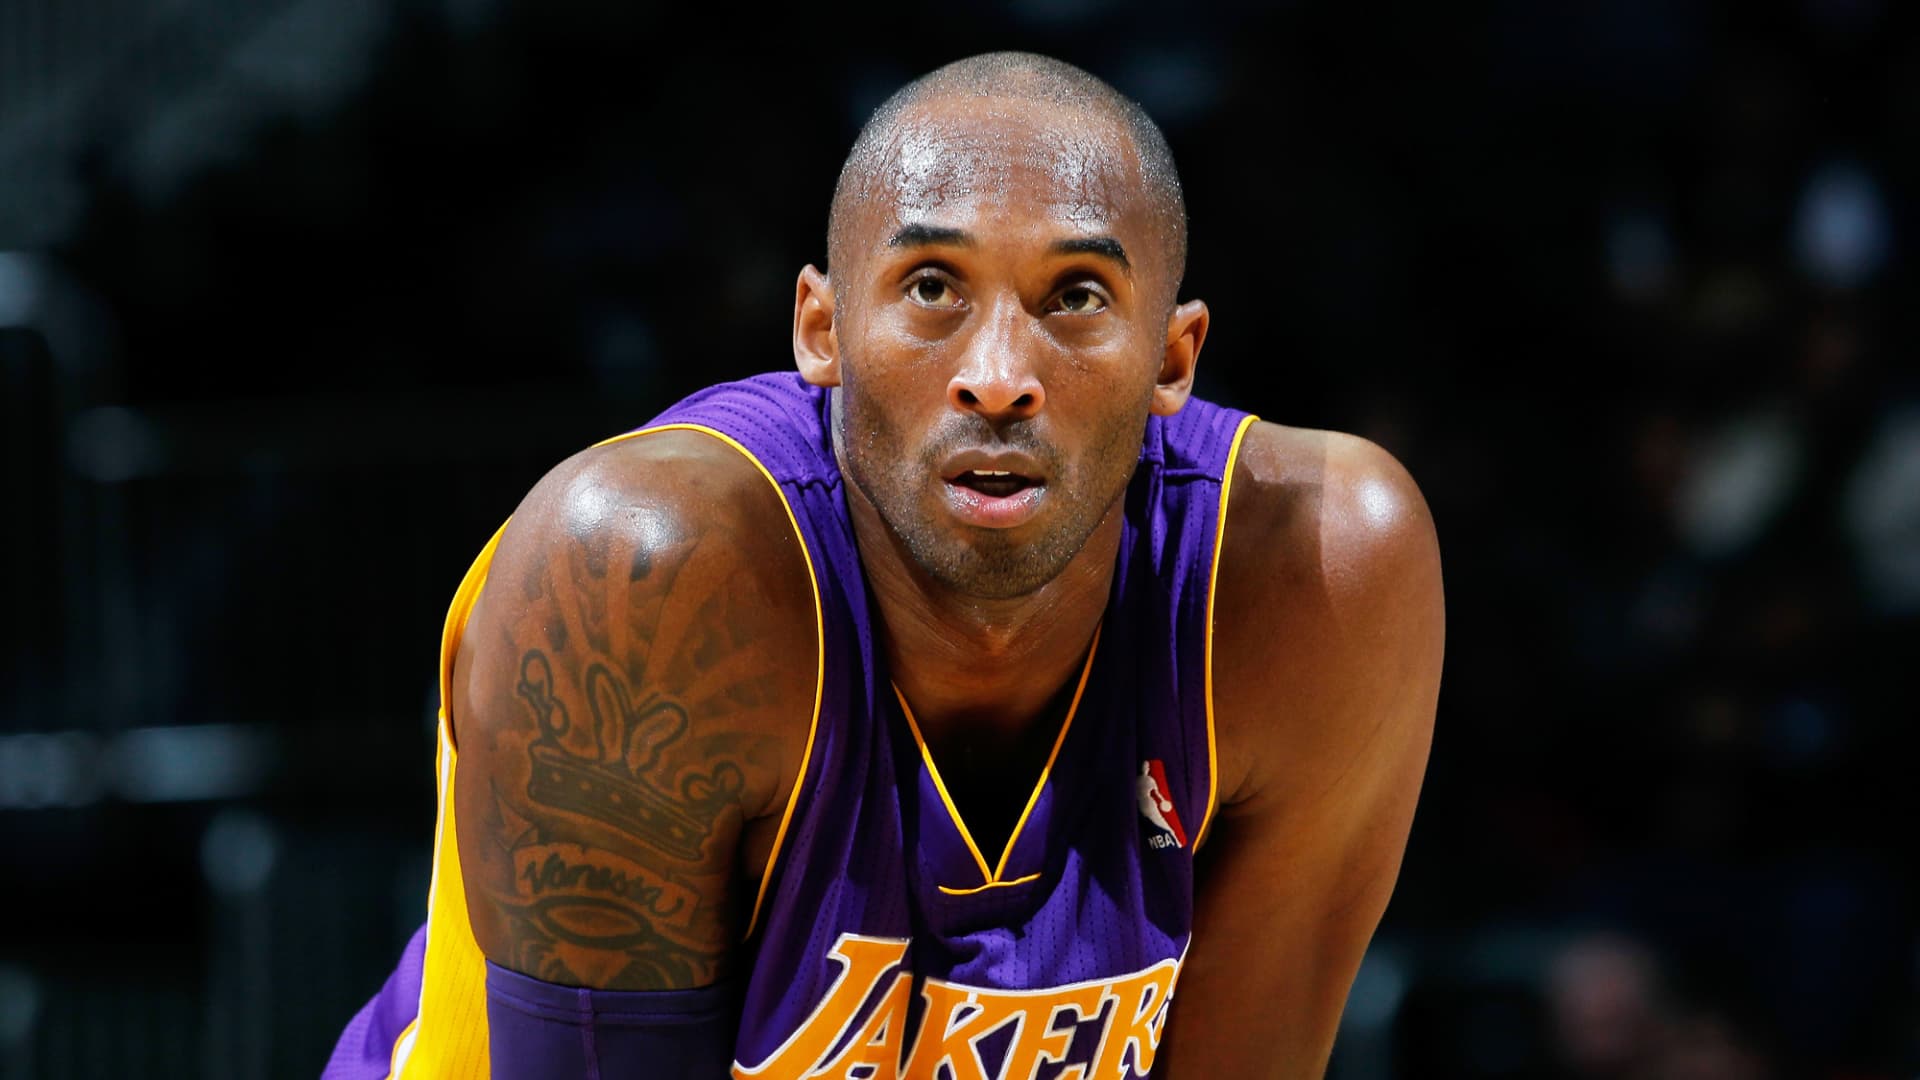 Den neste Lakers-legenden som skal foreviges som fortjener en statue etter Kobe Bryant